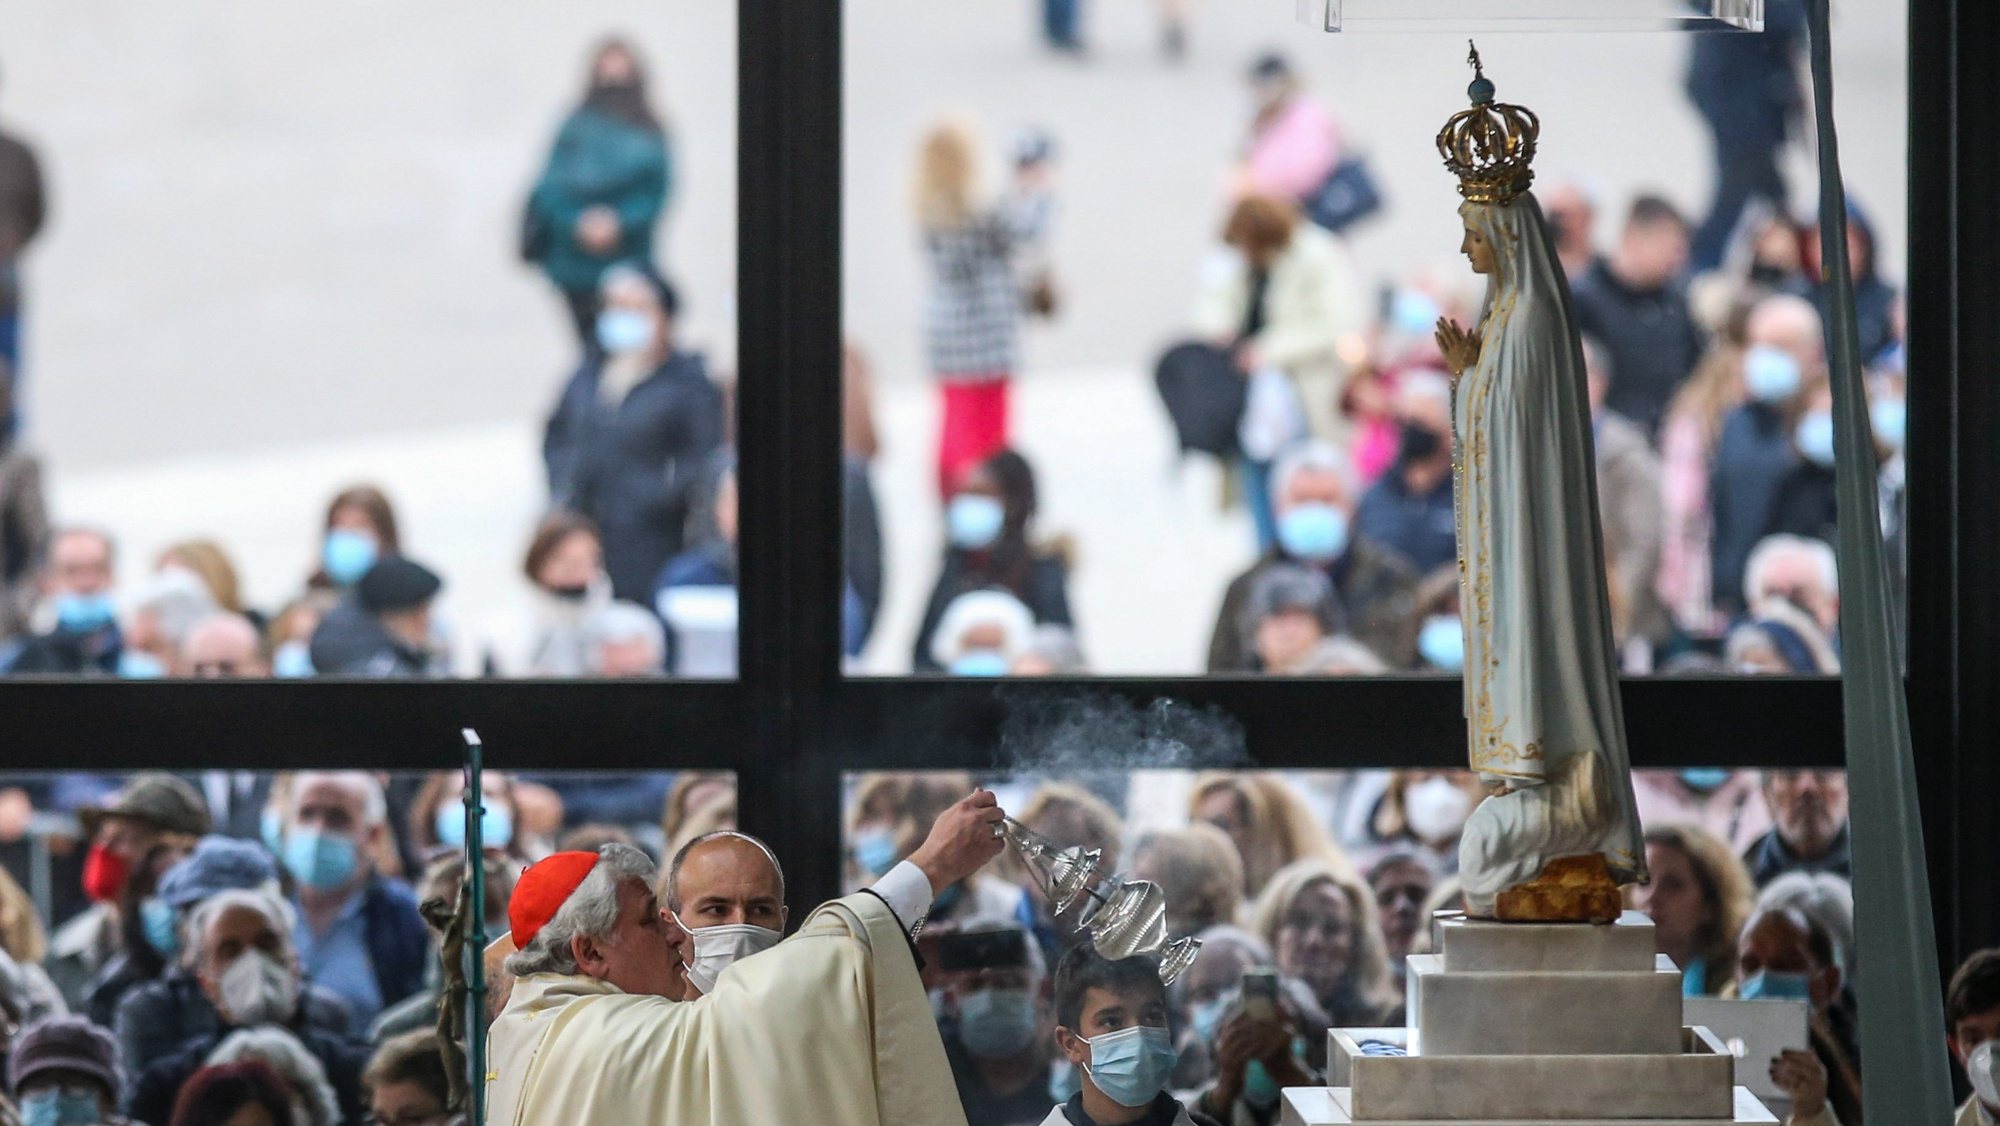 O Legado Pontifício, cardeal Konrad Krajewski, preside à cerimónia de consagração da Rússia e Ucrânia ao Imaculado Coração de Maria, na Capelinha das Aparições, Santuário de Fátima, 25 de março de 2022. PAULO CUNHA/LUSA